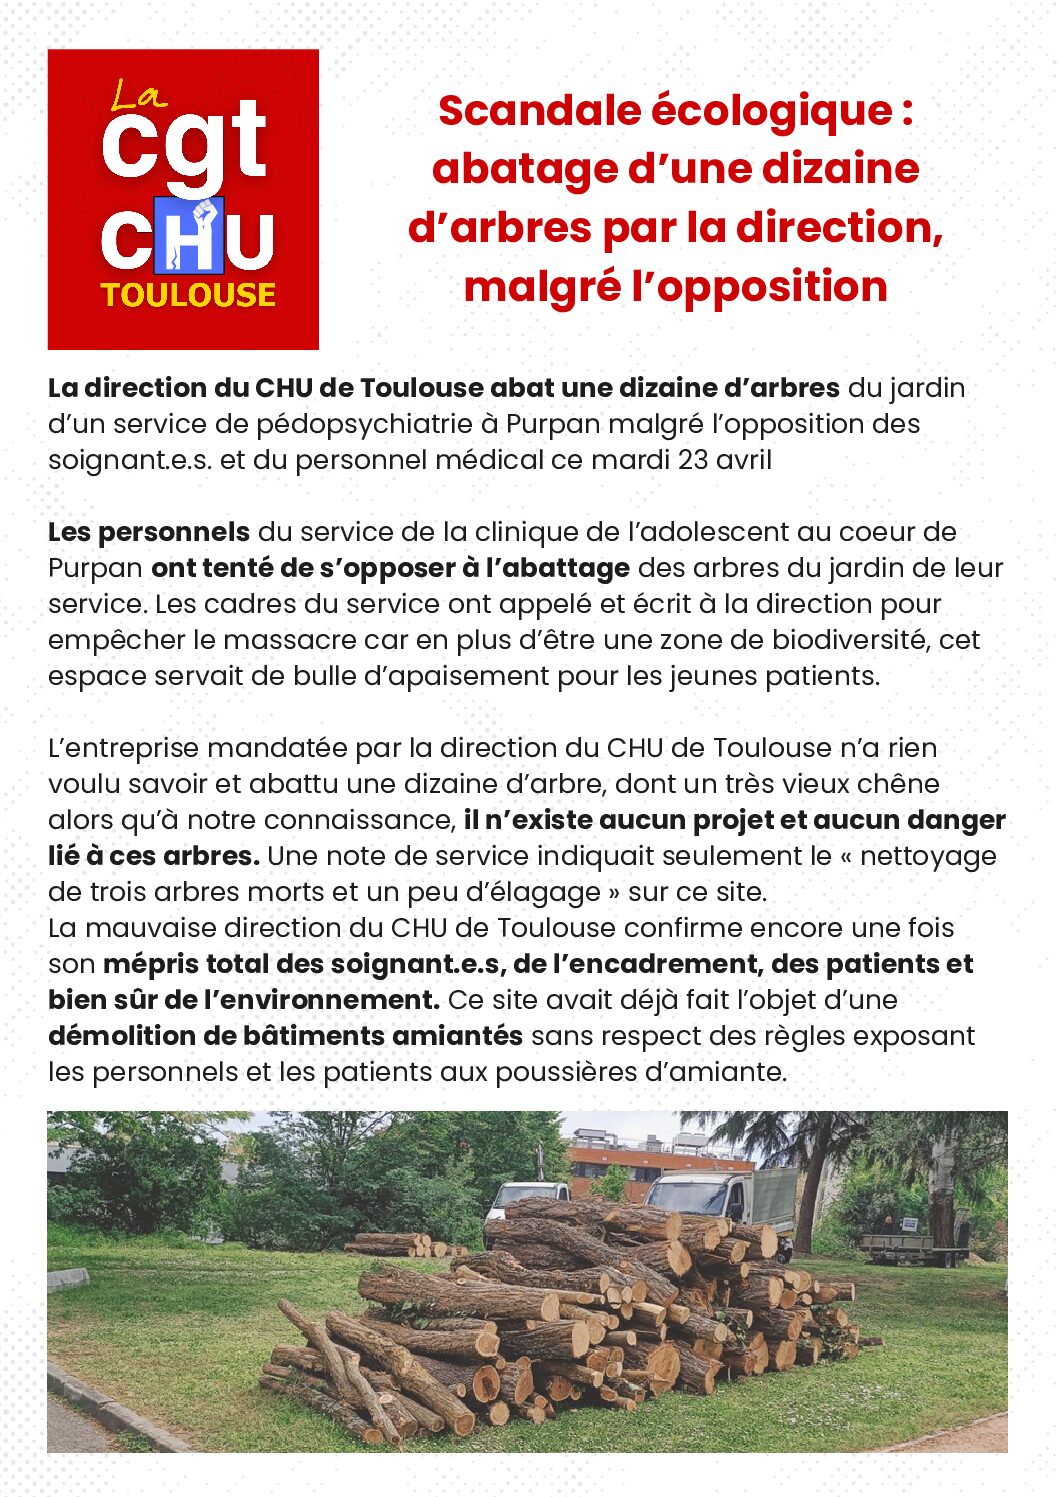 Scandale écologique au CHU : abatage d’arbres malgré l’opposition